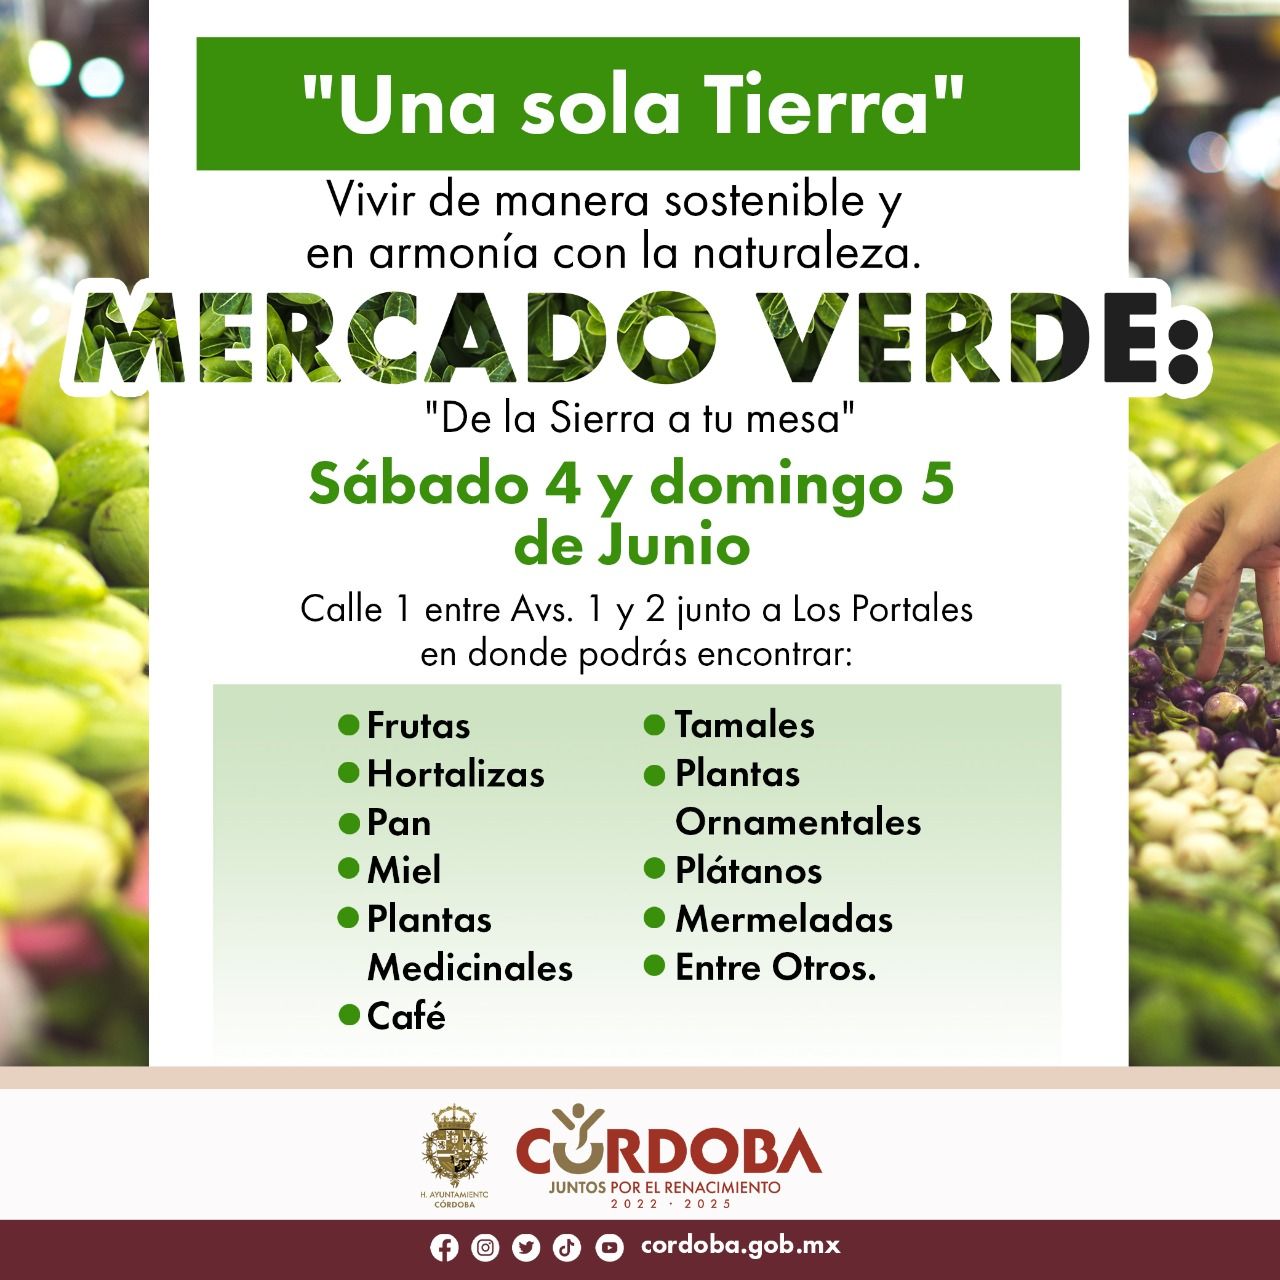 Habrá este sábado y domingo "Mercado Verde" con productos de la Sierra de Córdoba